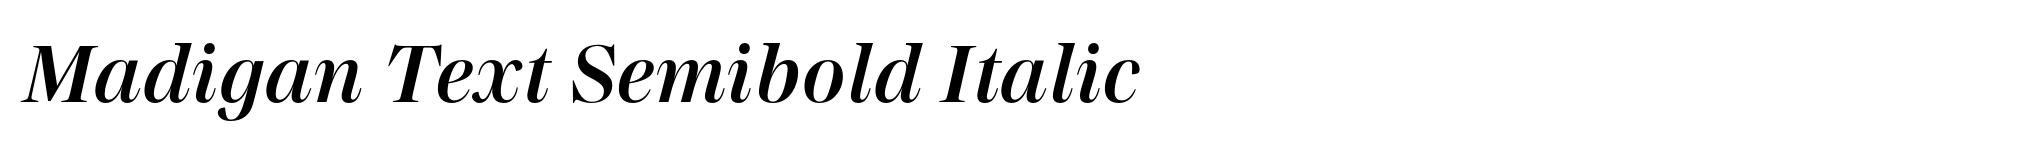 Madigan Text Semibold Italic image